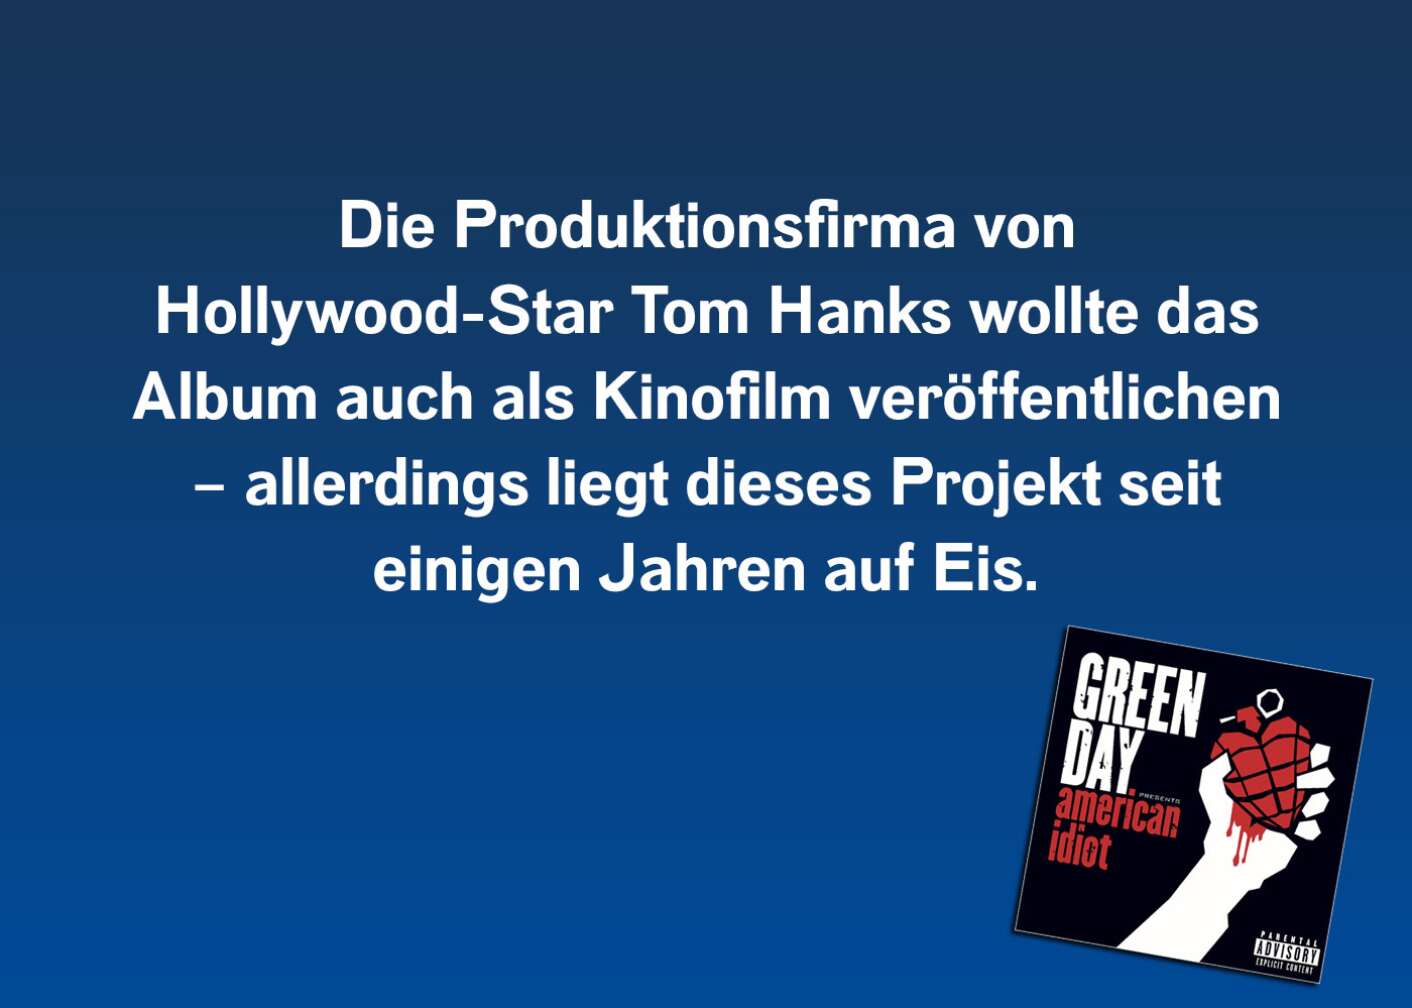 Die Produktionsfirma von Hollywood-Star Tom Hanks wollte das Album auch als Kinofilm veröffentlichen – allerdings liegt dieses Projekt seit einigen Jahren auf Eis.